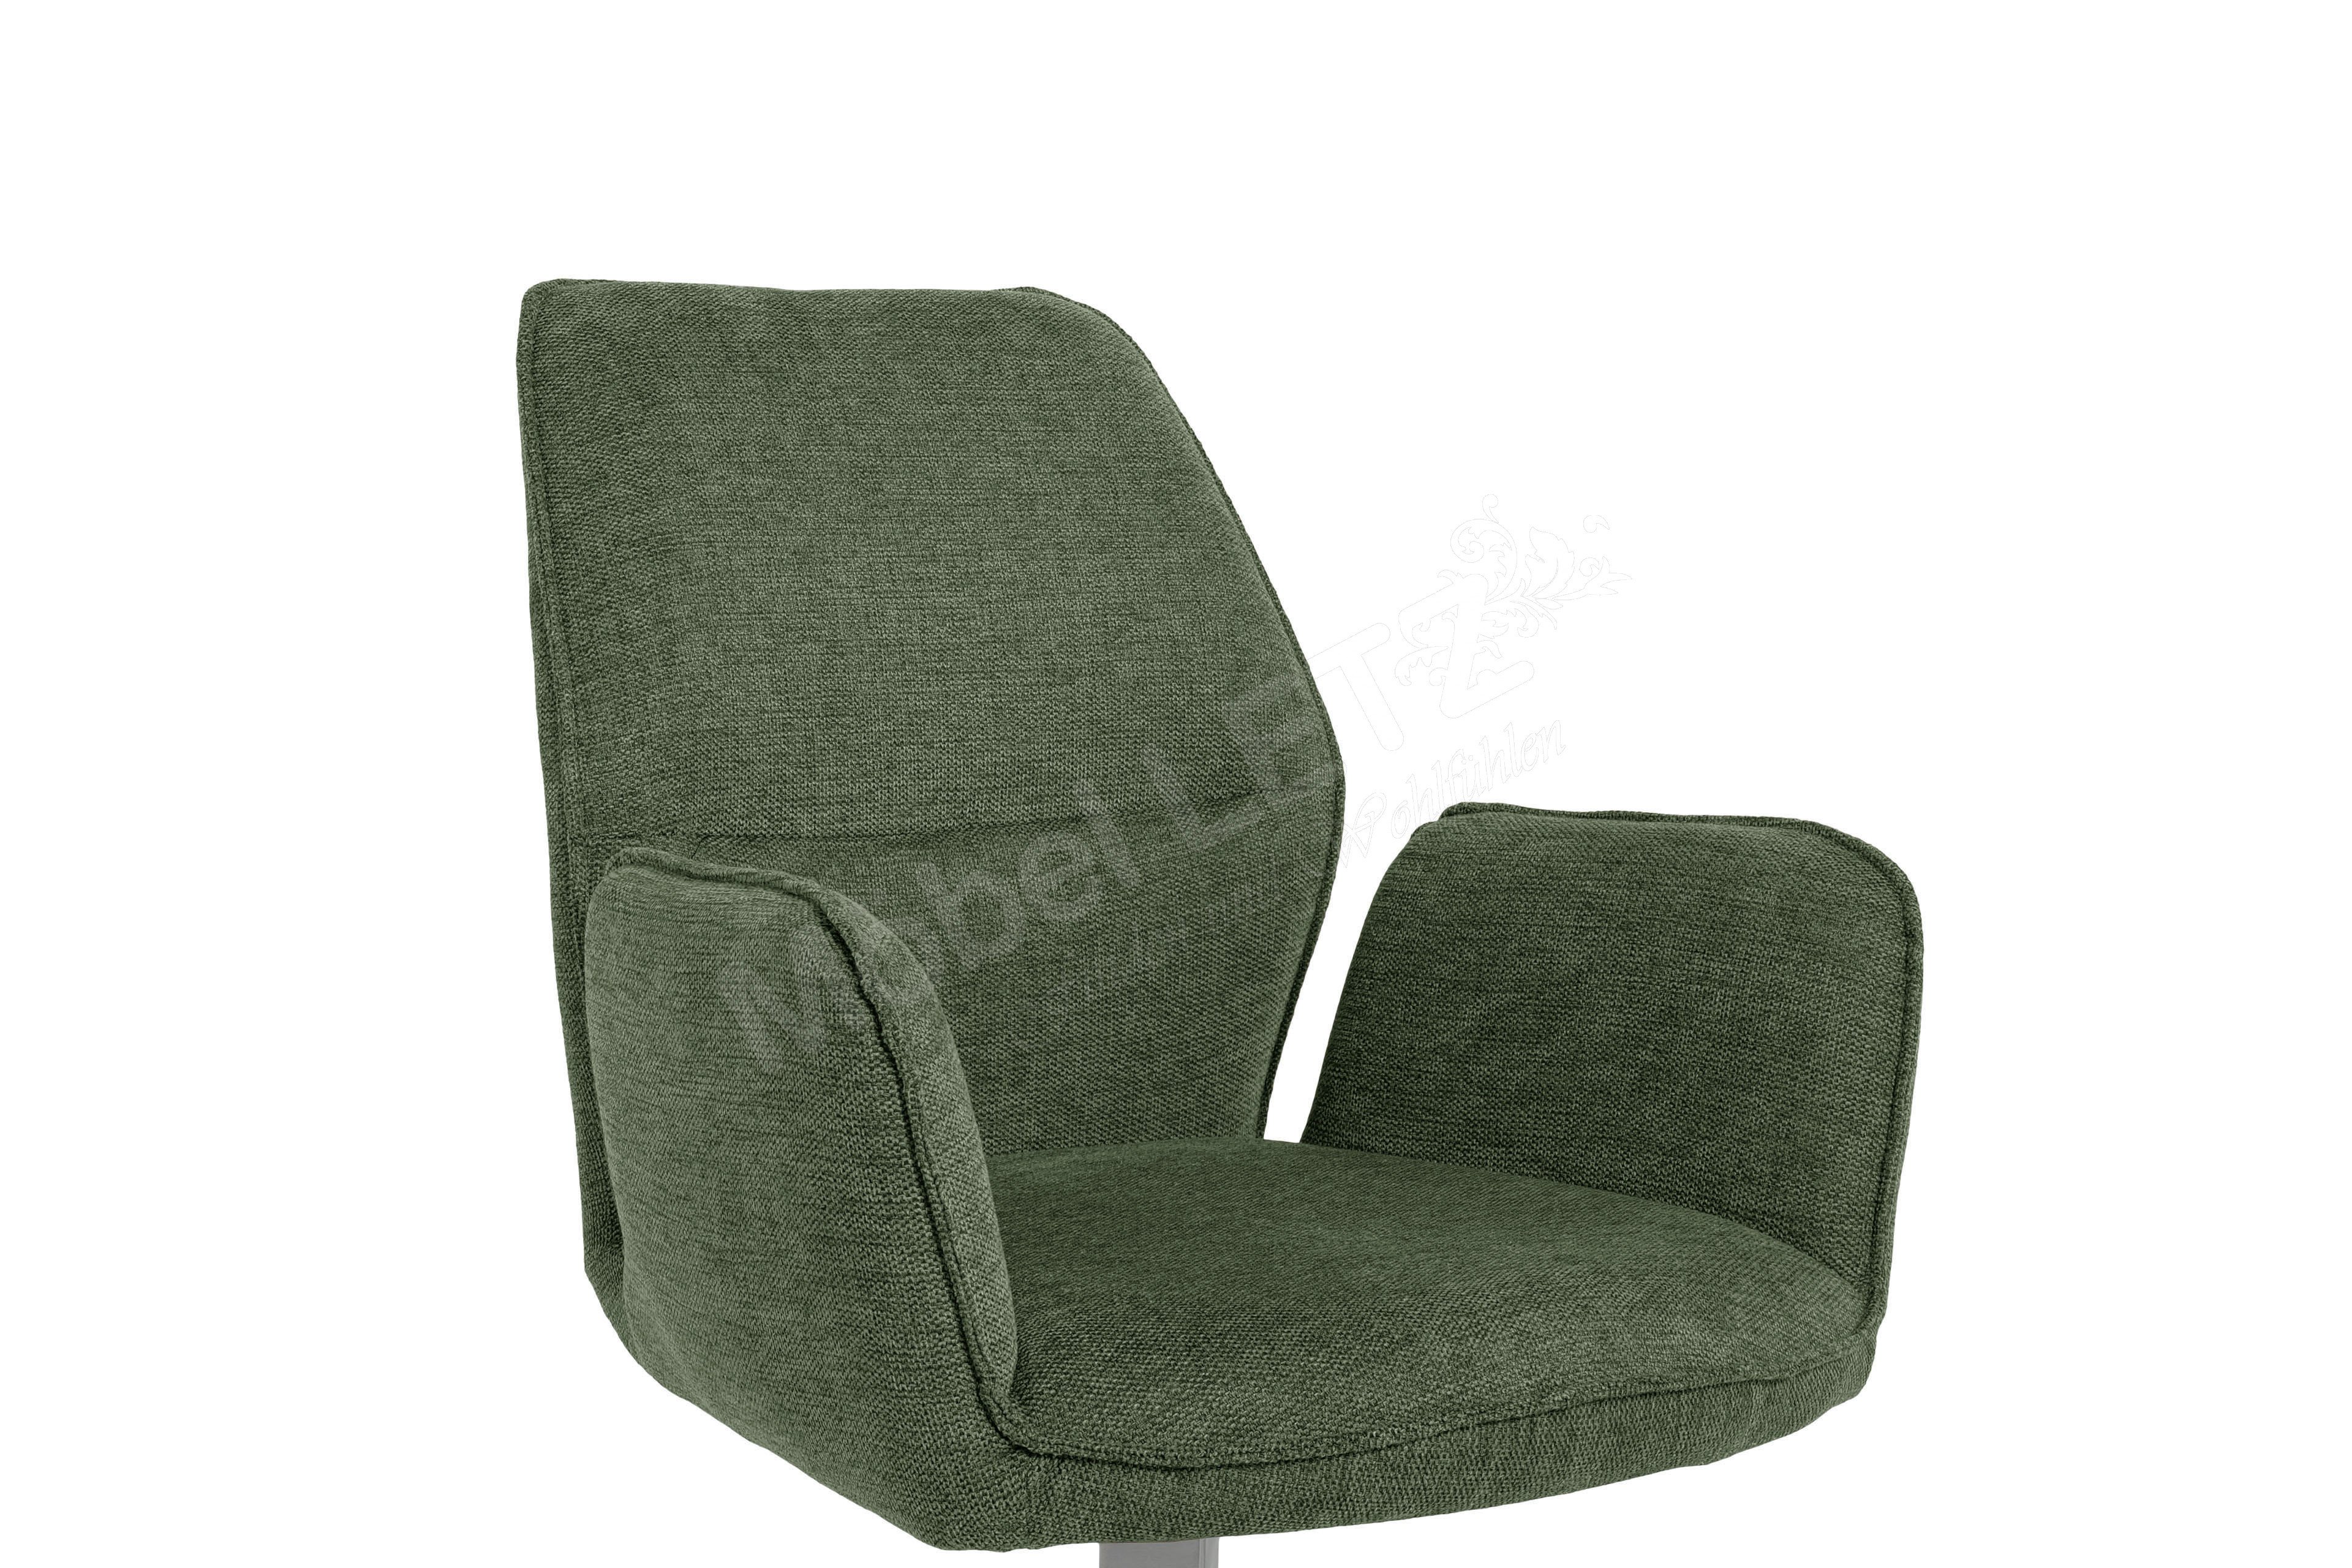 Olive-Grün Stuhl Greyton - Letz Online-Shop furniture Ihr | in Möbel MCA